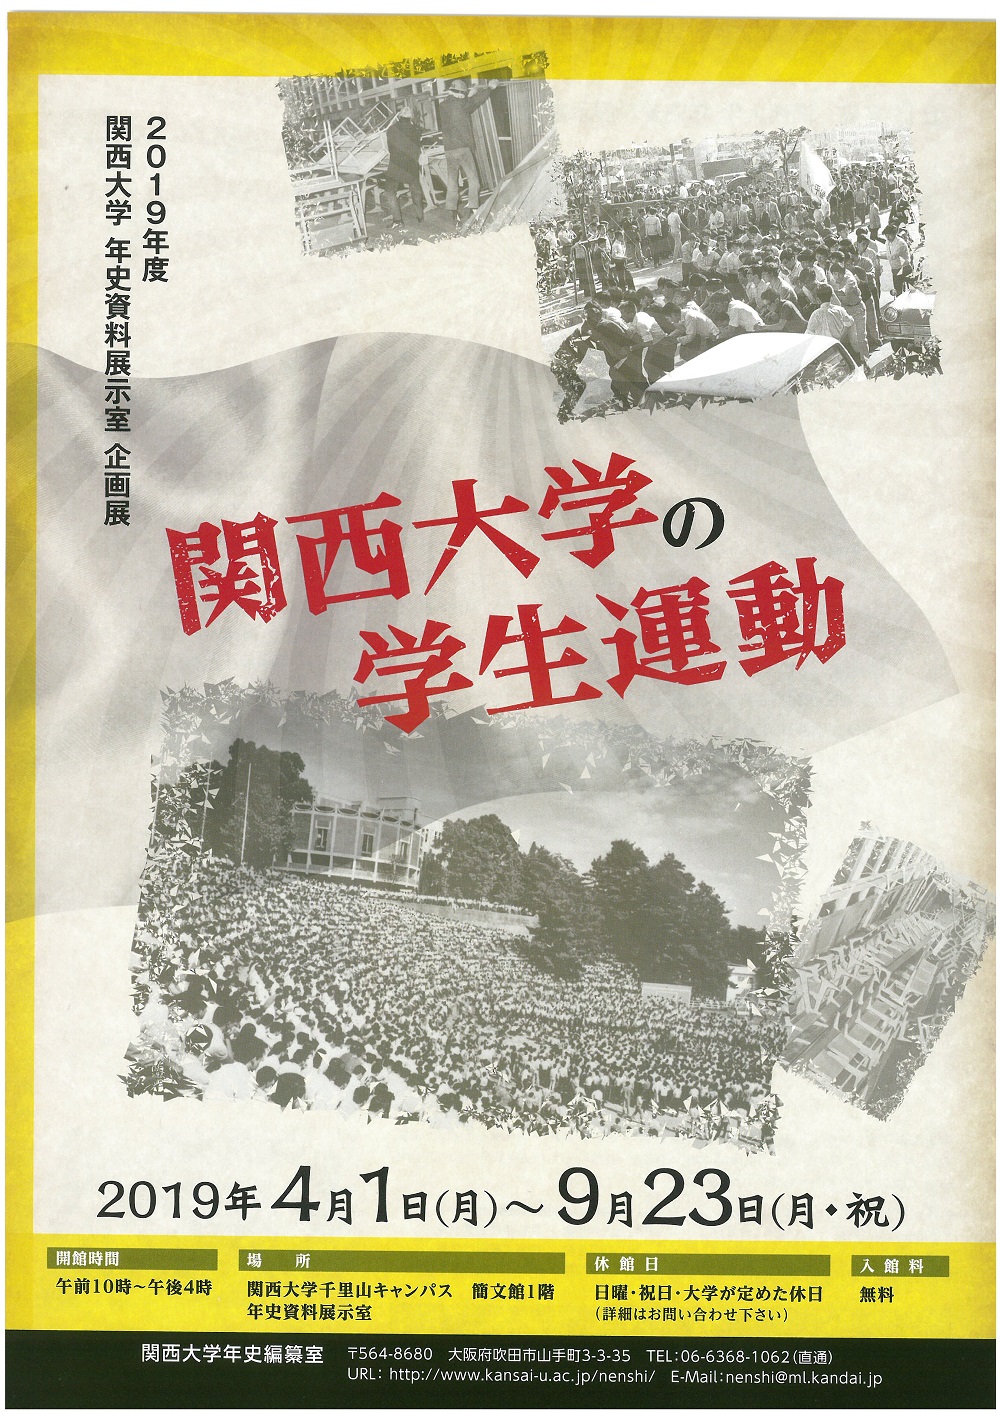 企画展「関西大学の学生運動」